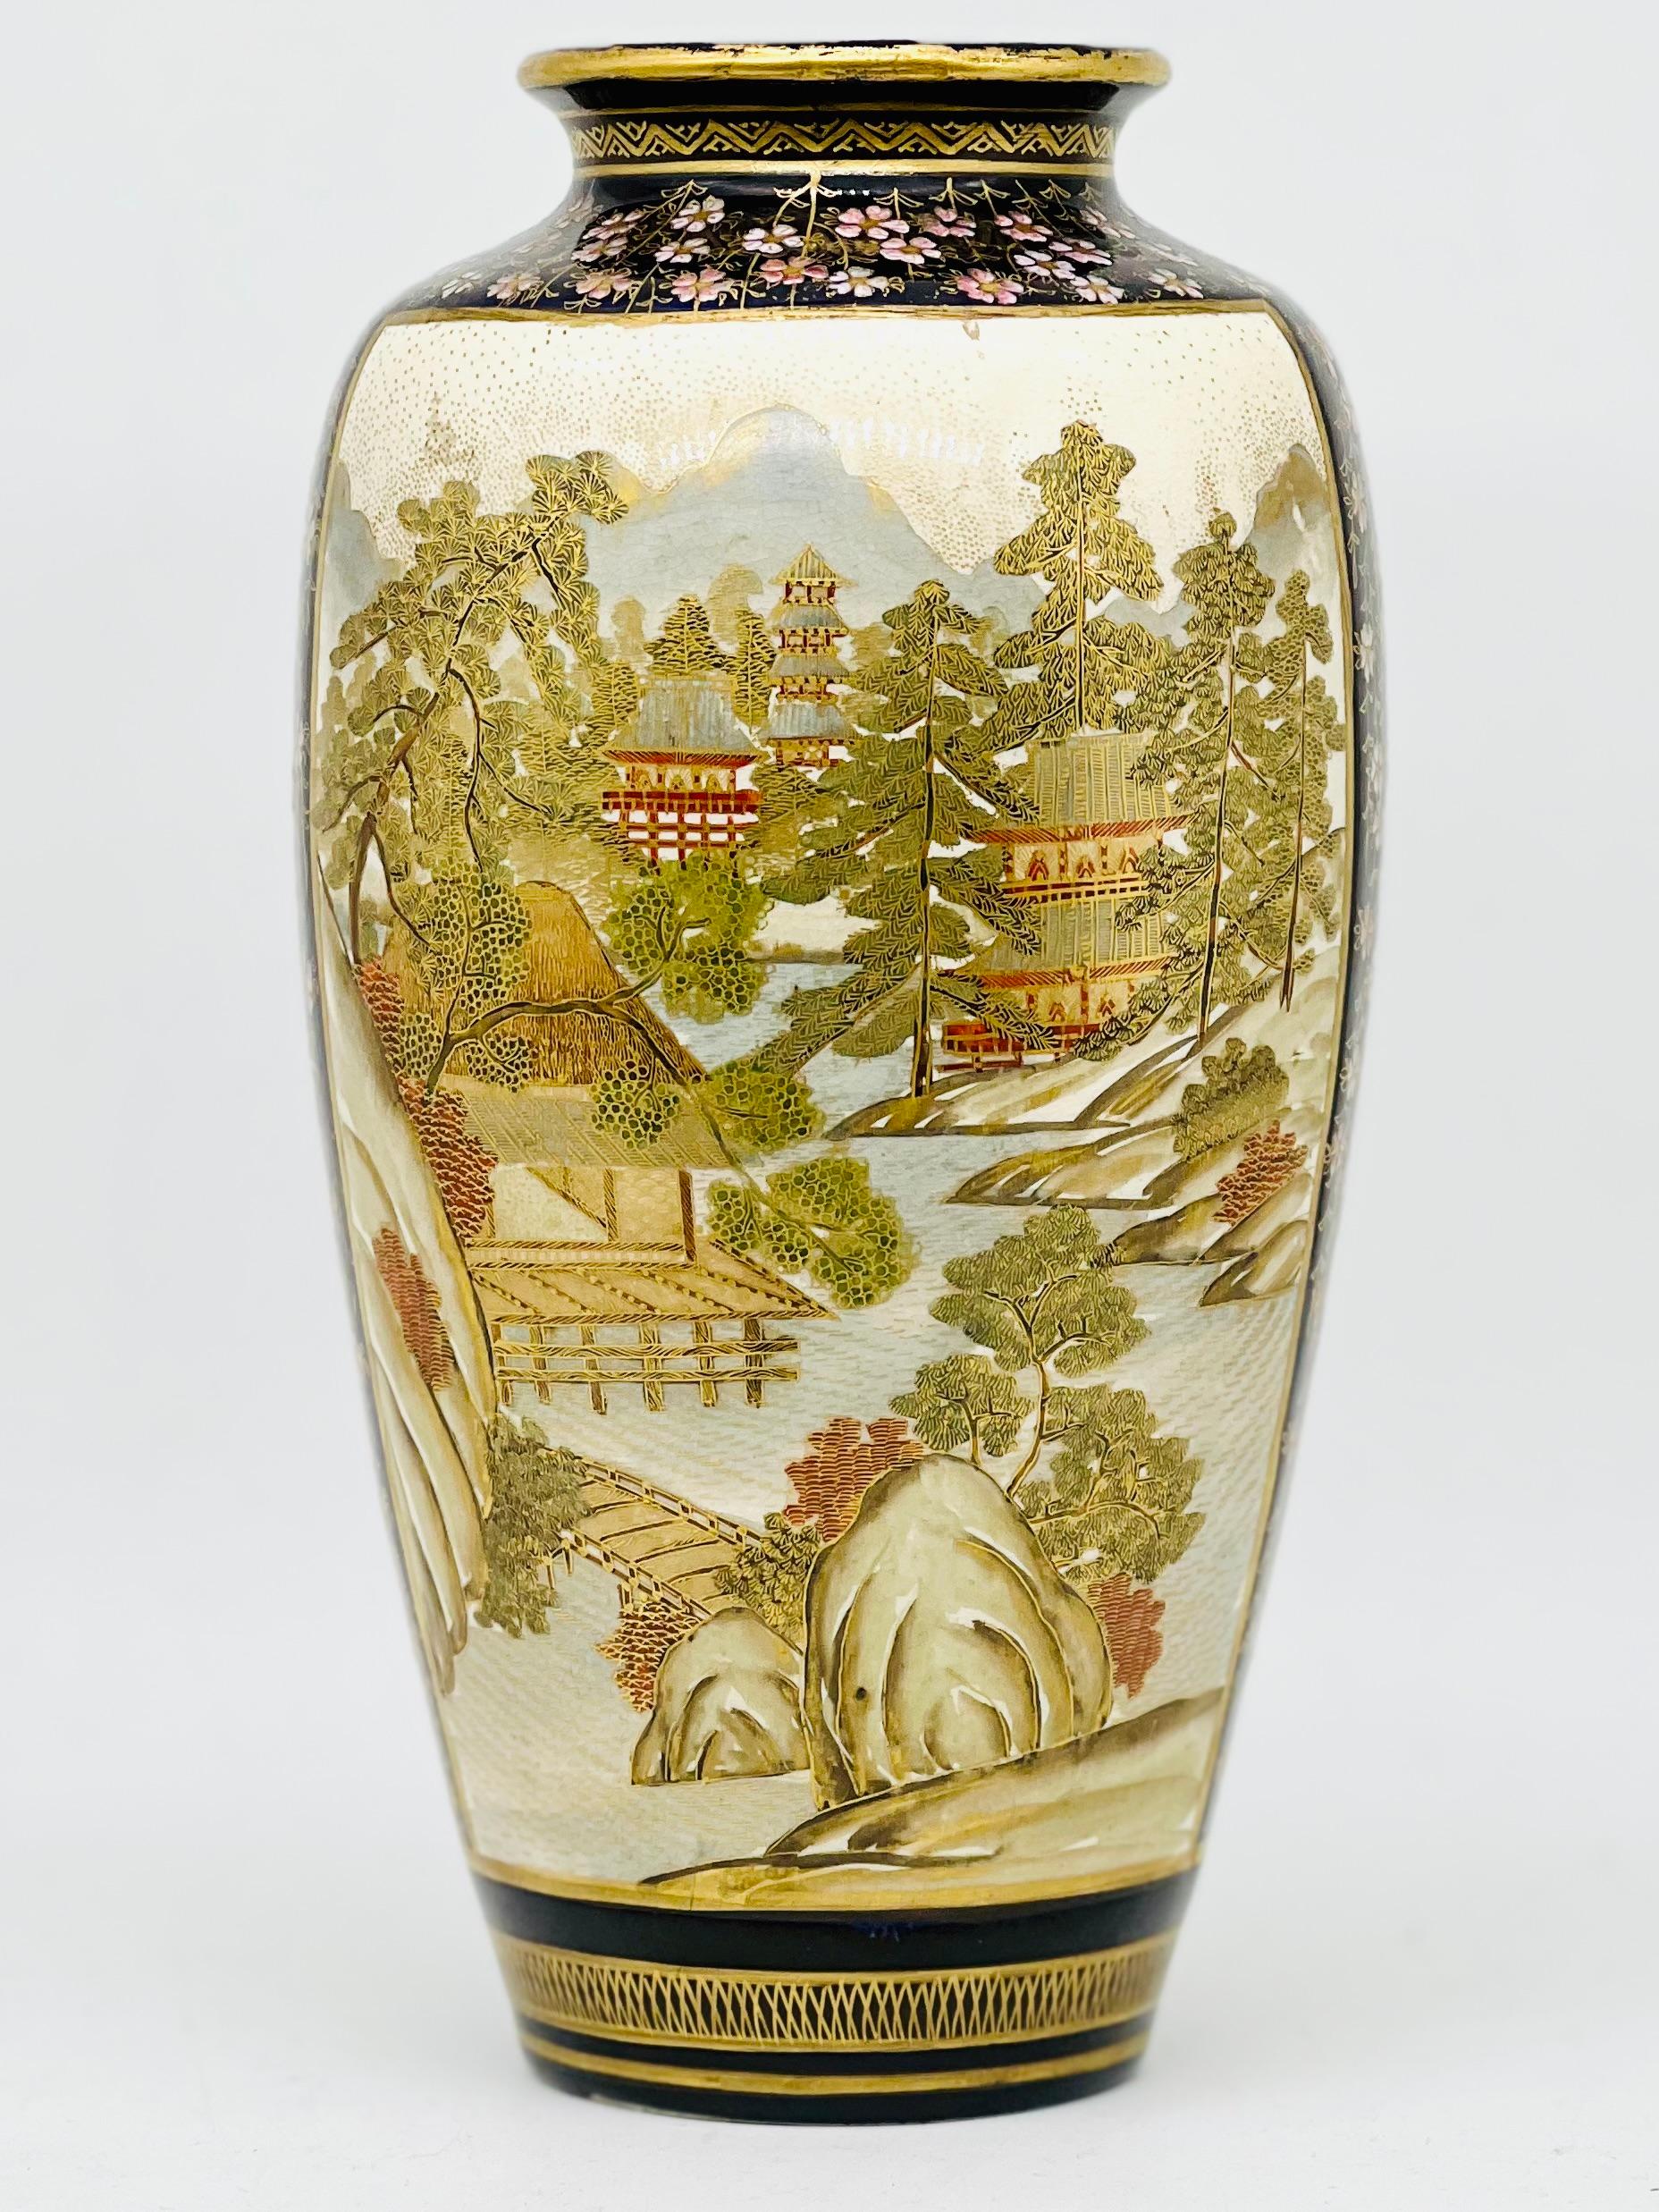 Eine prächtige japanische Satsuma-Vase in schlanker, eiförmiger Form, dekoriert mit einer weitläufigen Landschaft und Hühnern inmitten von Bambusbäumen.

Unterzeichnet von Kinkozan. Meiji-Periode. 

Größe H. 24,5 cm B 12 cm, Durchmesser bis zum